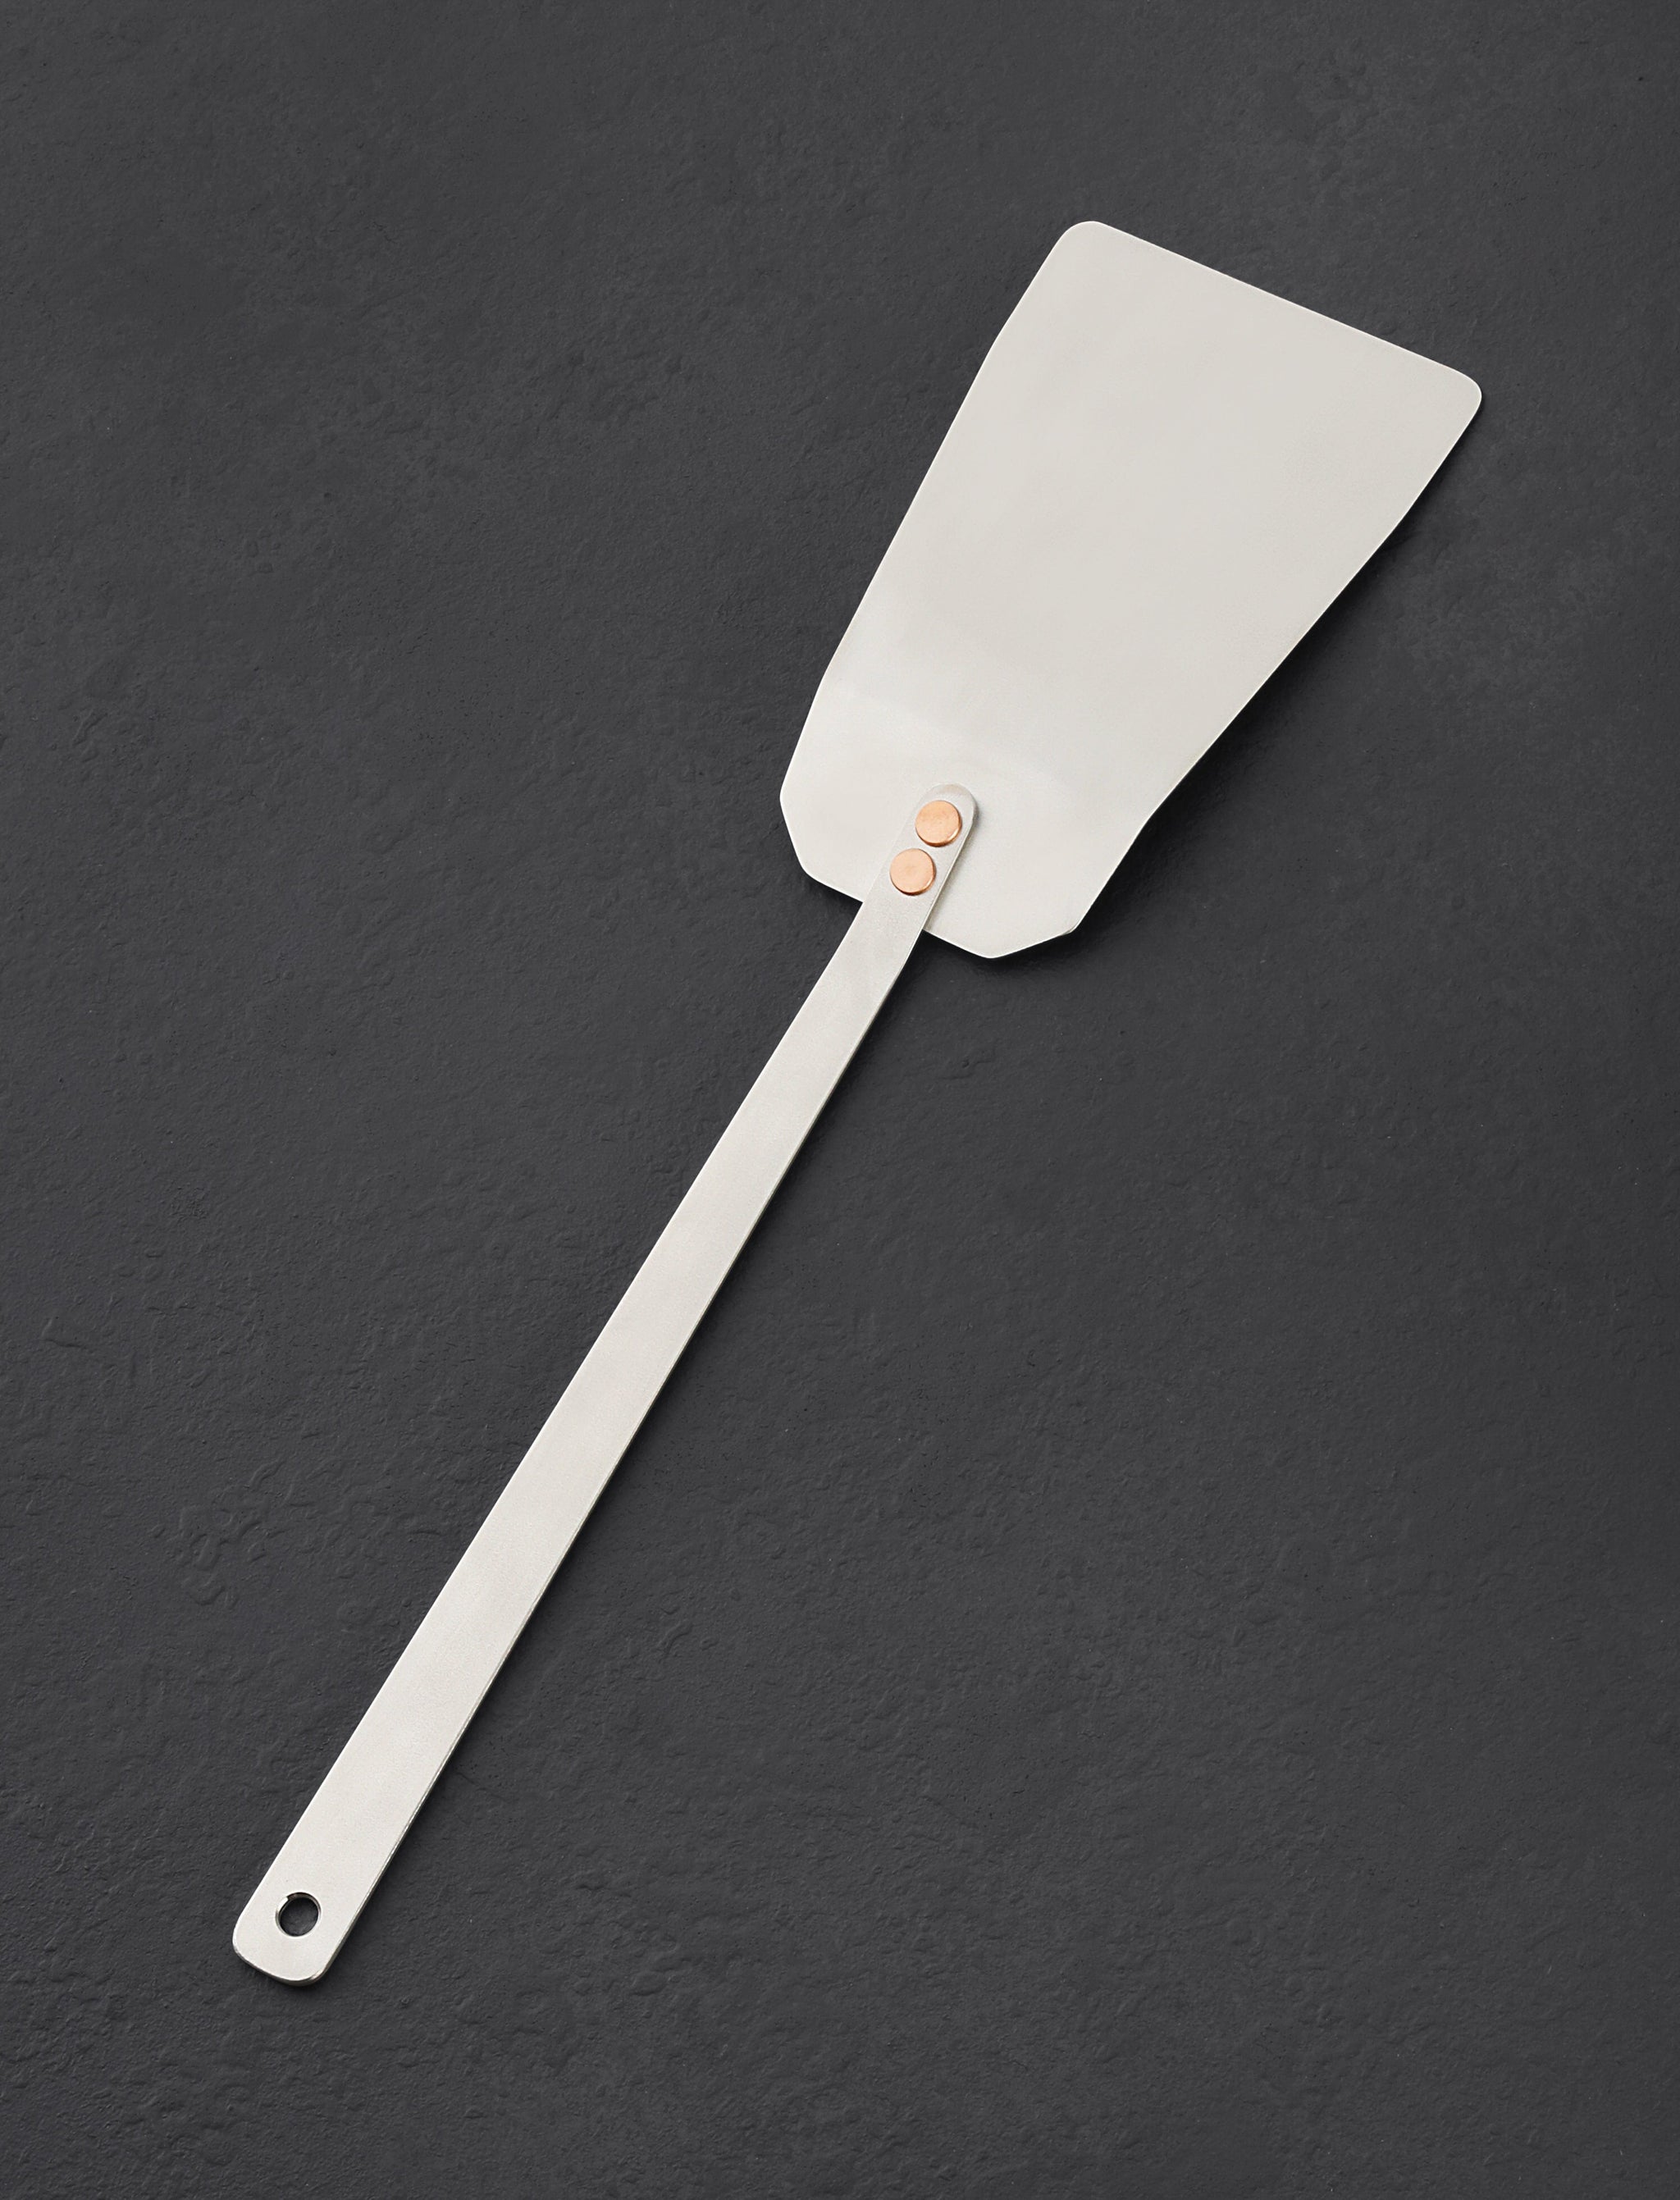 https://eatingtools.com/cdn/shop/files/spatulas-ben-tendick-oregon-tispats-titanium-grill-spatula-43020367429907.jpg?v=1693335795&width=2048